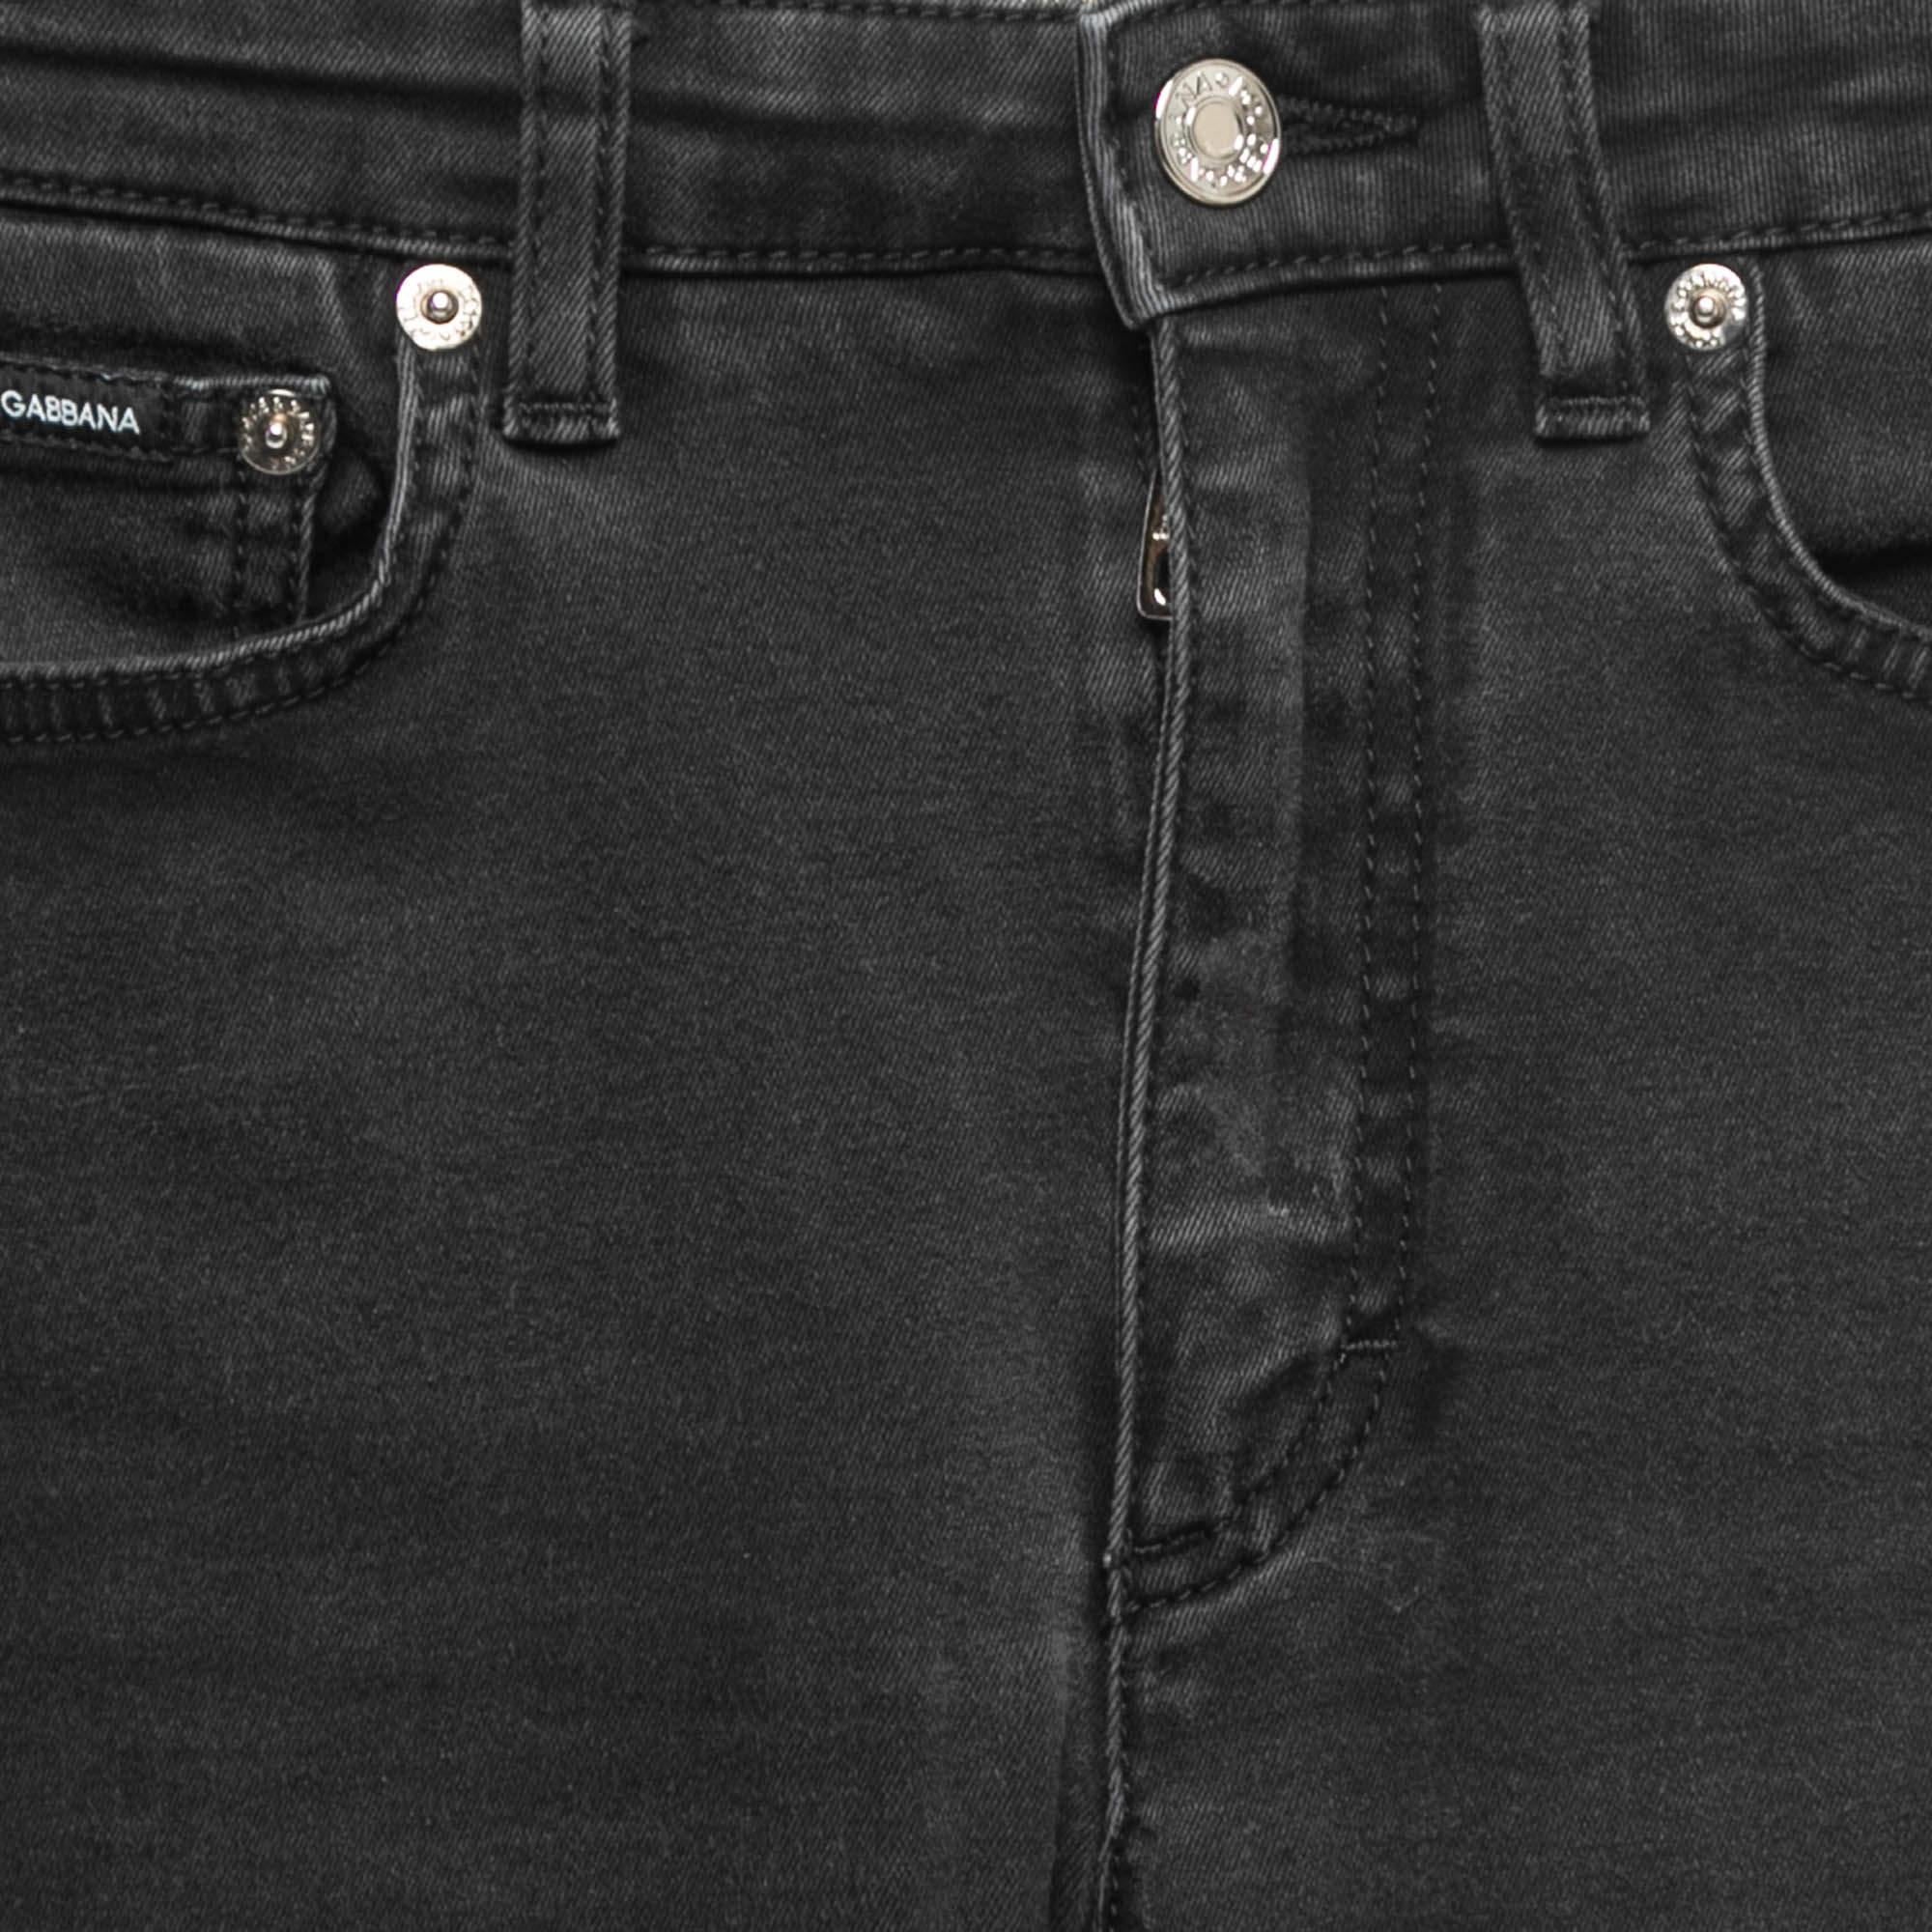 Women's Dolce & Gabbana Black Denim Audrey Skinny Jeans XS Waist 24